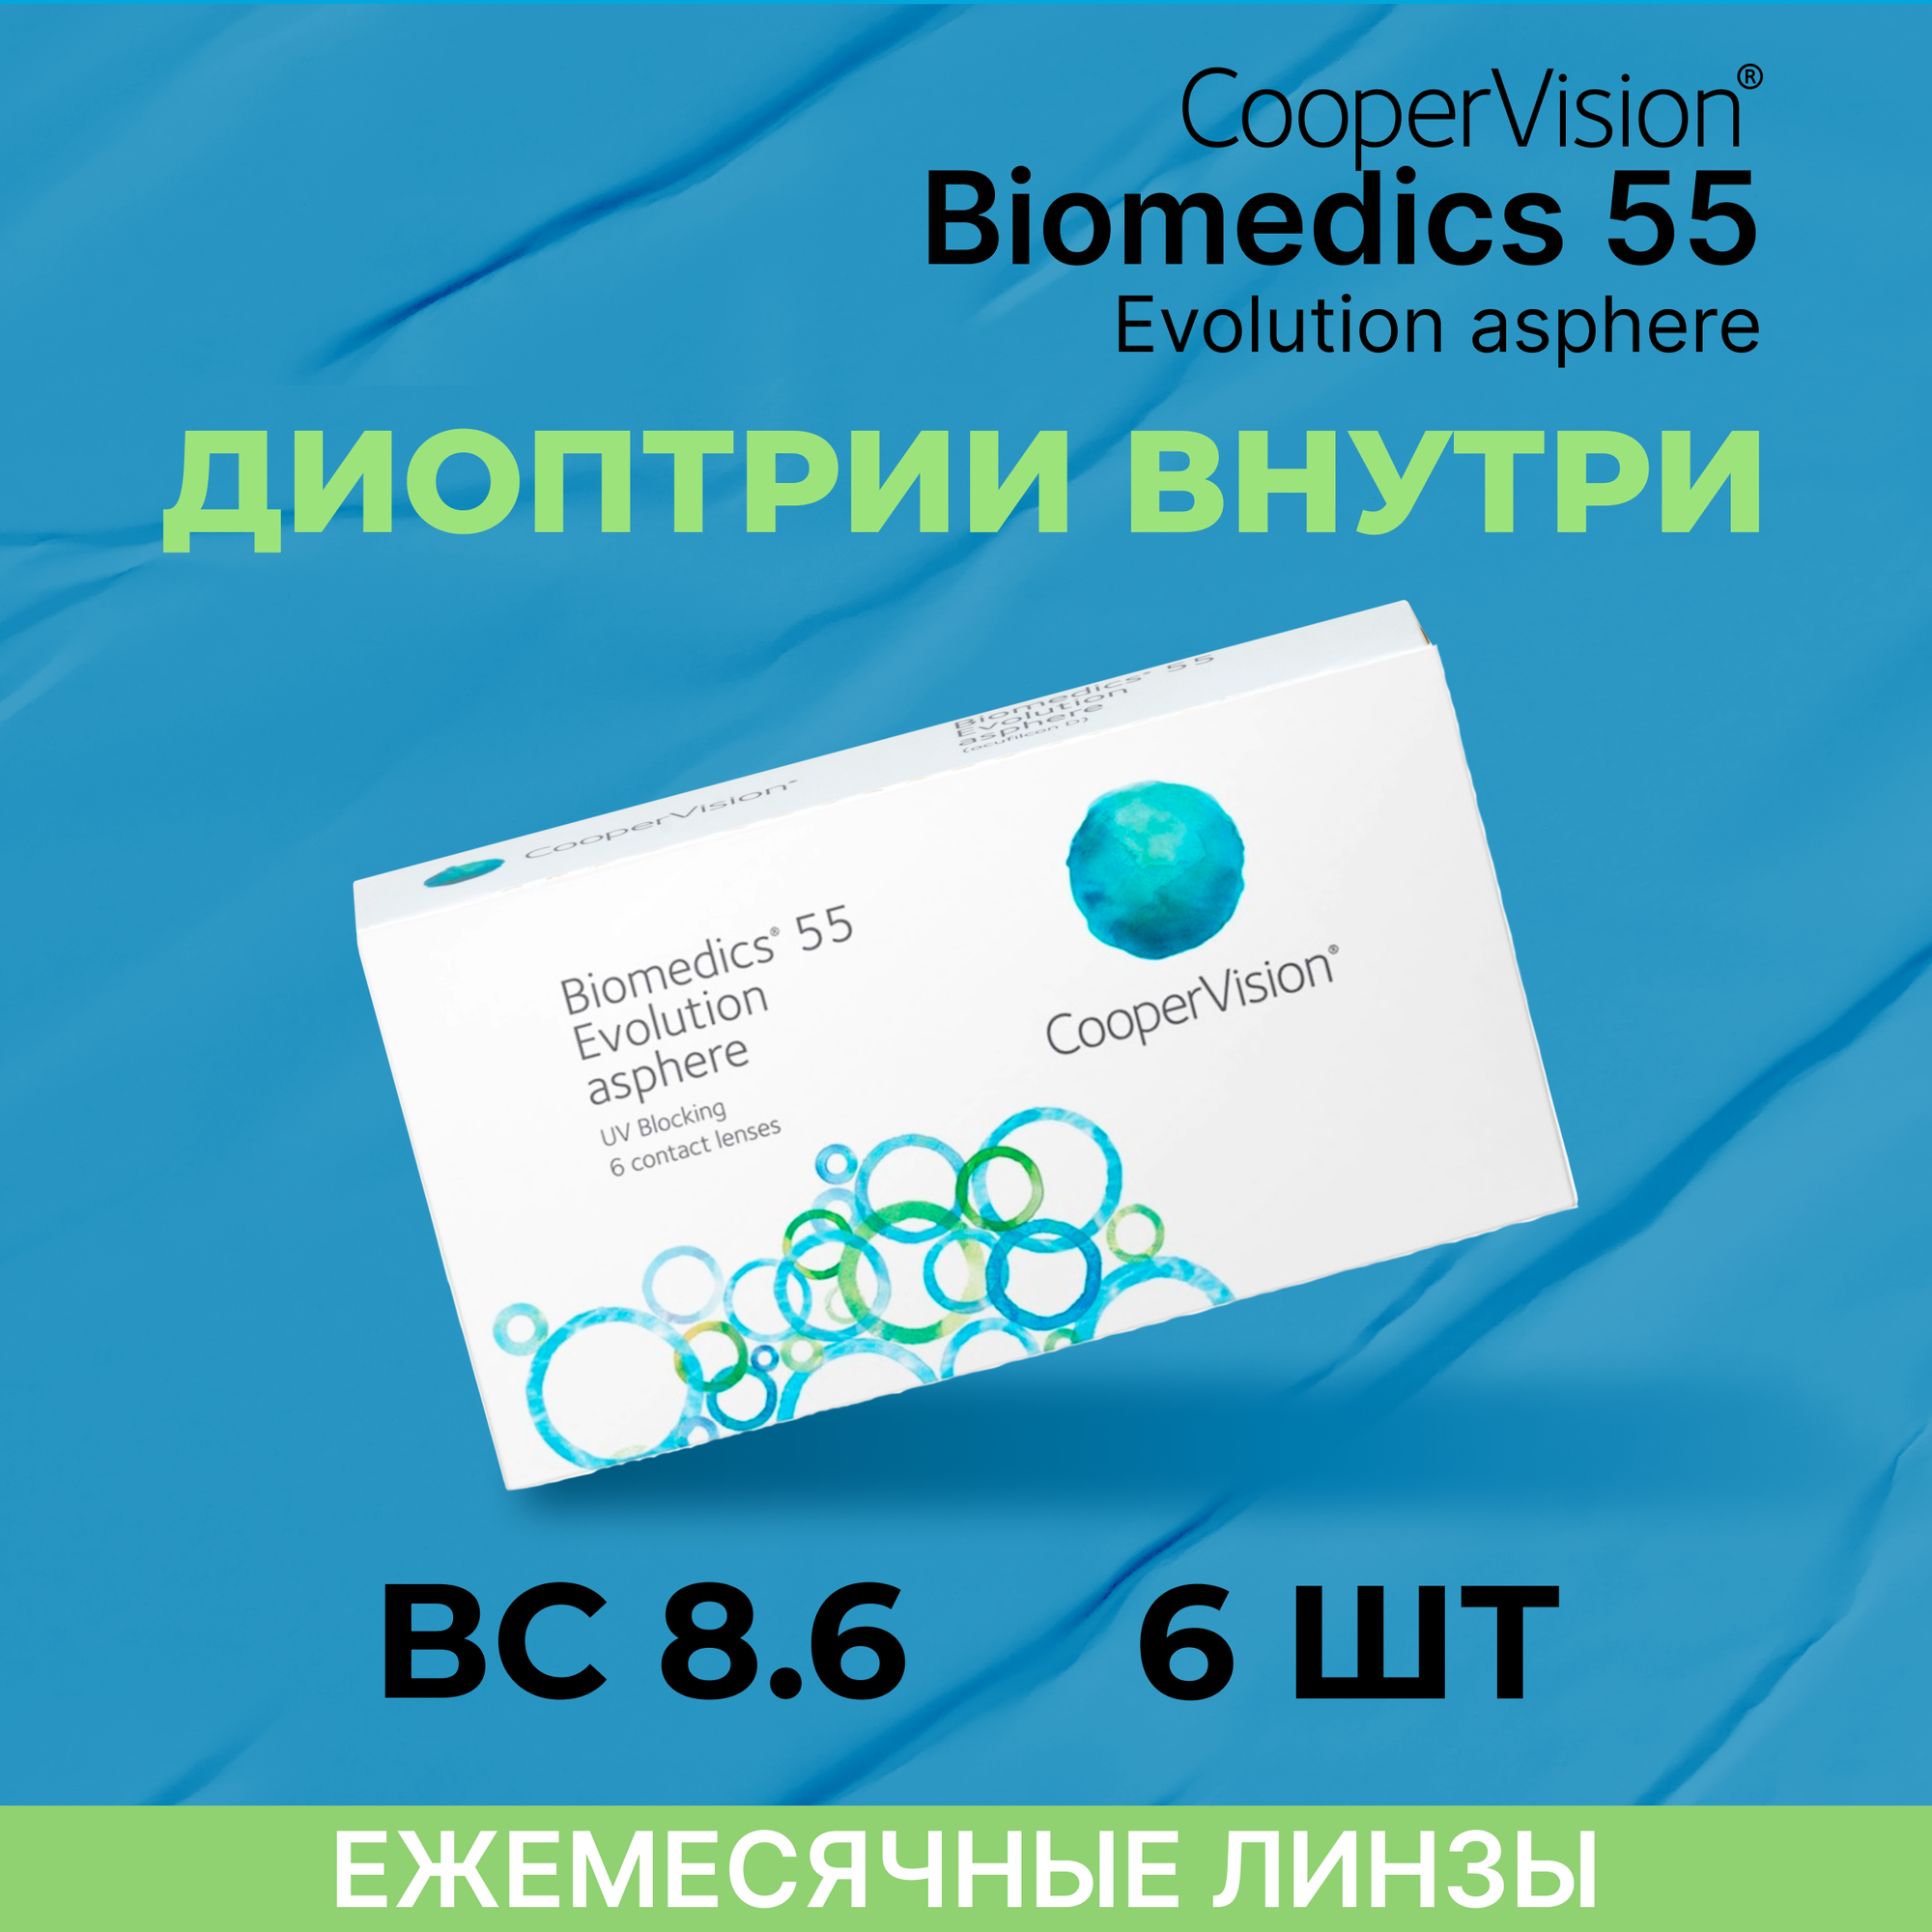 Контактные линзы CooperVision Biomedics 55 Evolution Asphere (6 линз) -1.75 R 8.6, ежемесячные, прозрачные